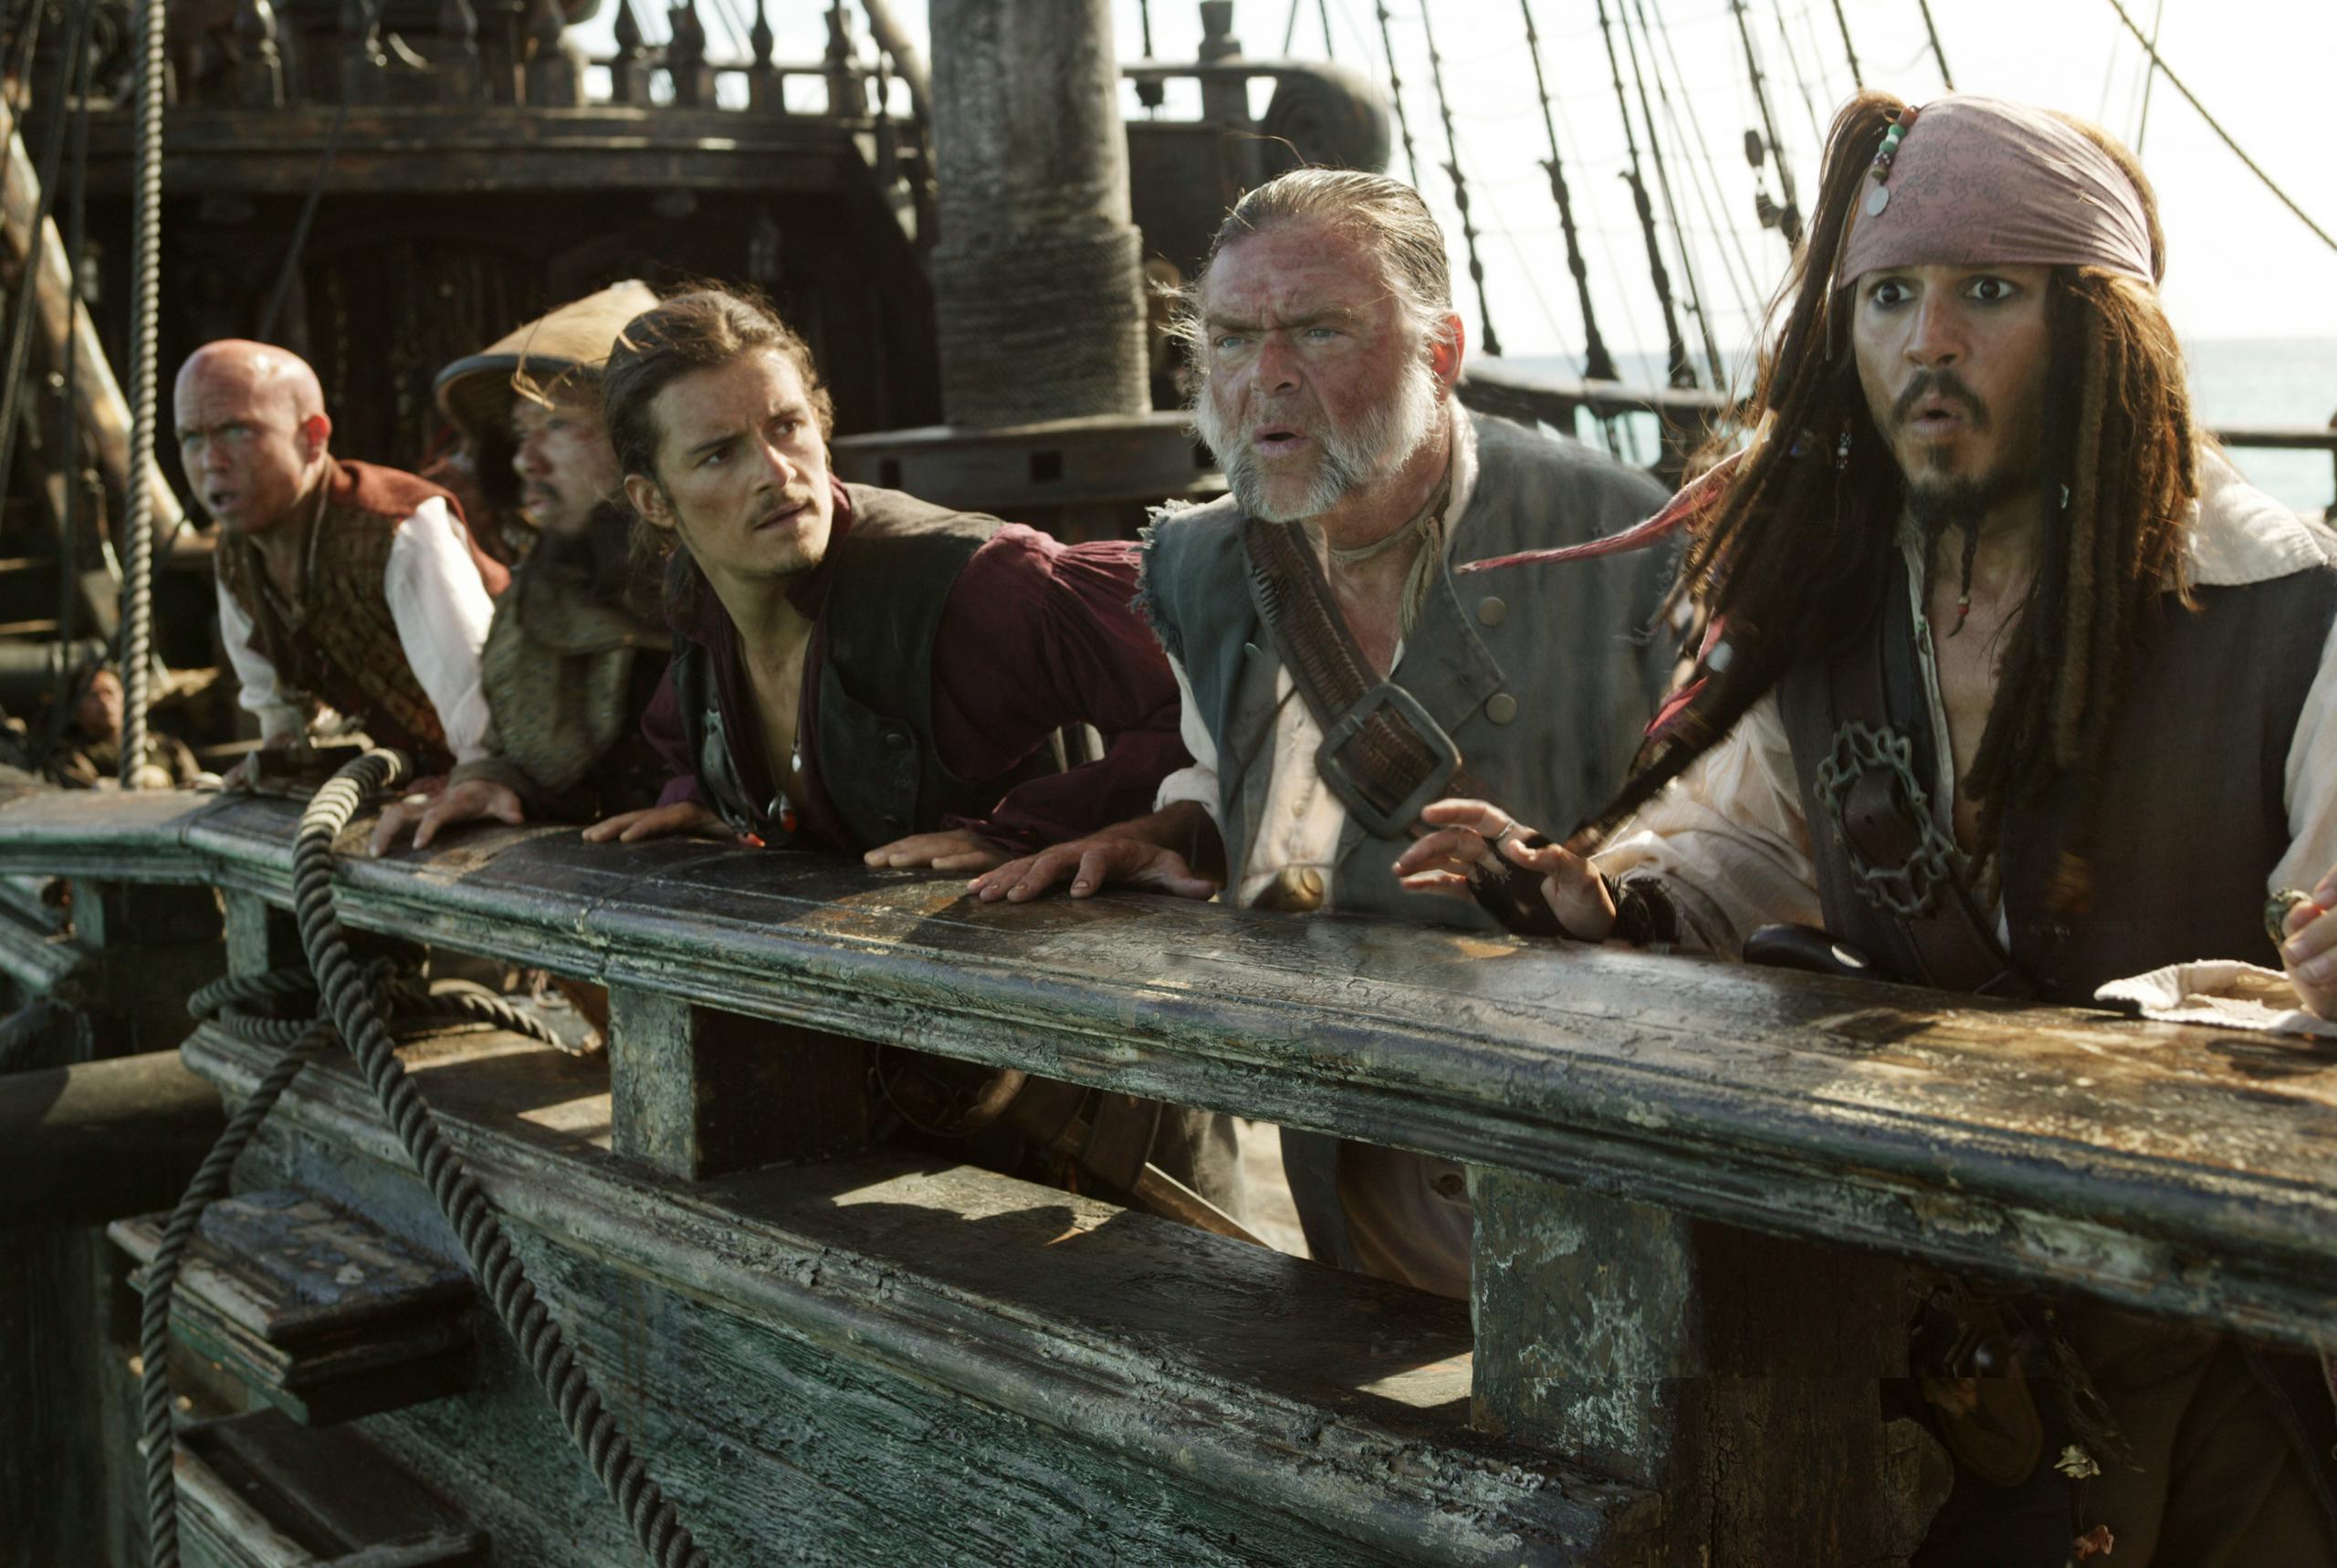 Kevin McNally interpretó al maestre Gibbs -en la foto al lado de Jack Sparrow- en la saga "Pirates of the Caribbean".